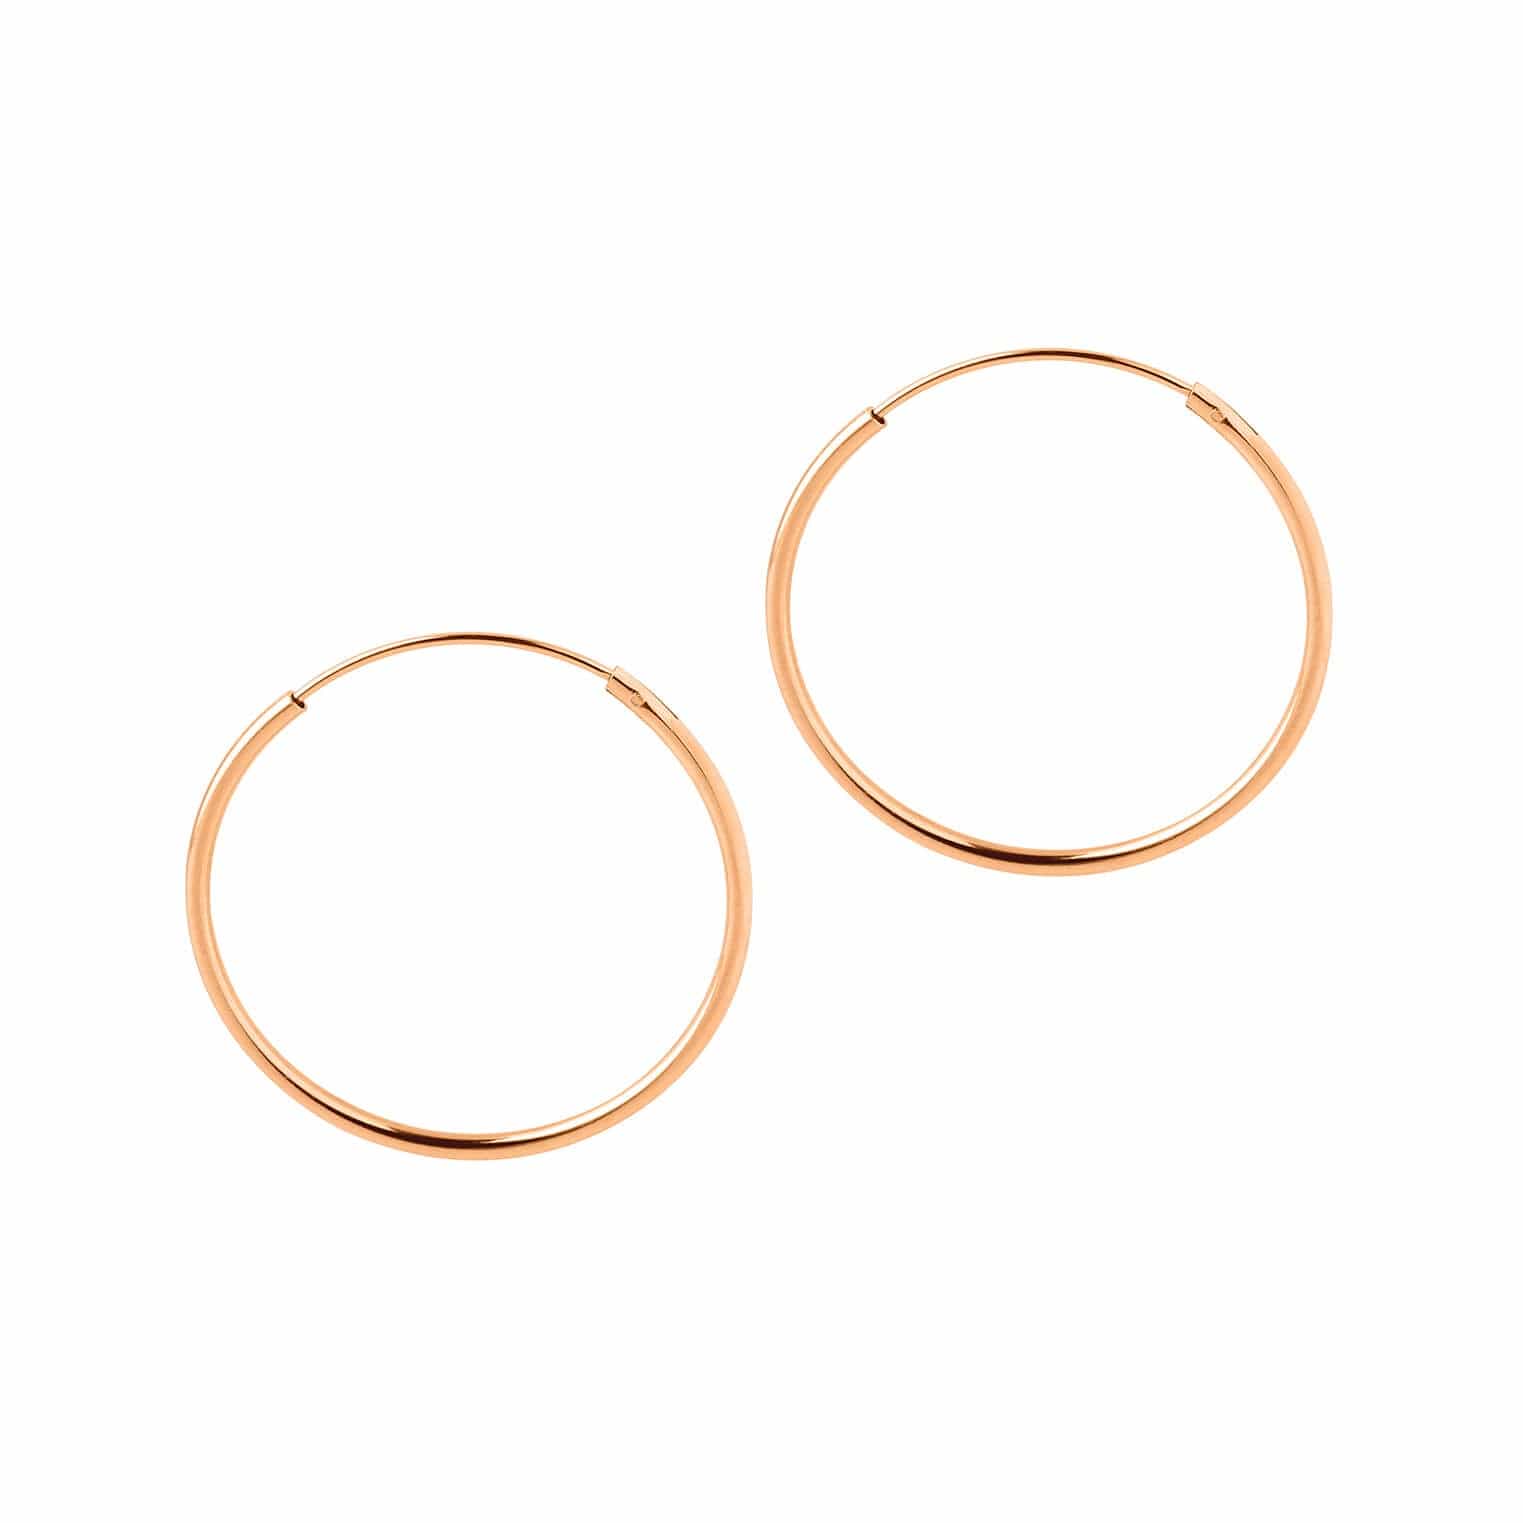 Gold Plated Hoop Earrings 25 MM 1,2 MM